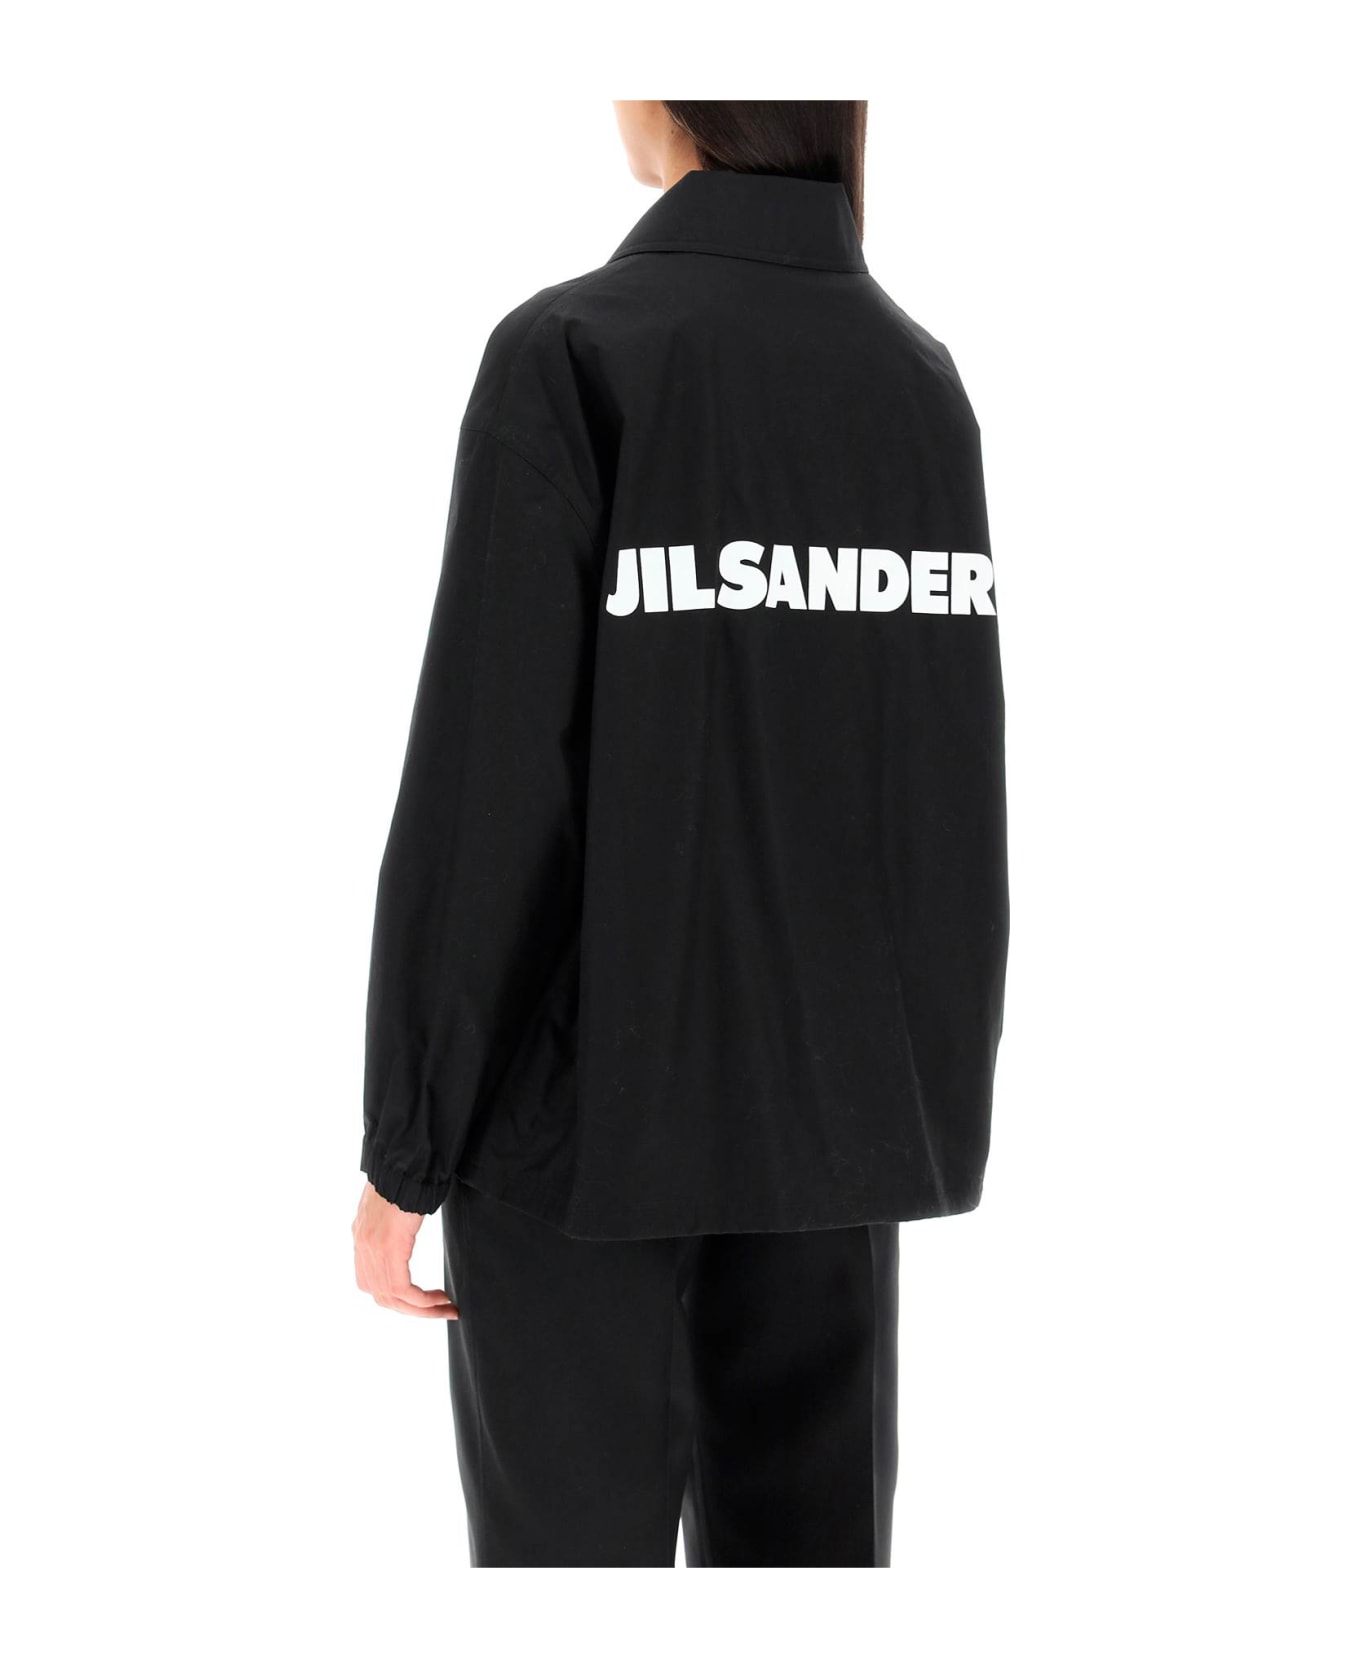 Jil Sander Back Logo Jacket - Black ダウンジャケット